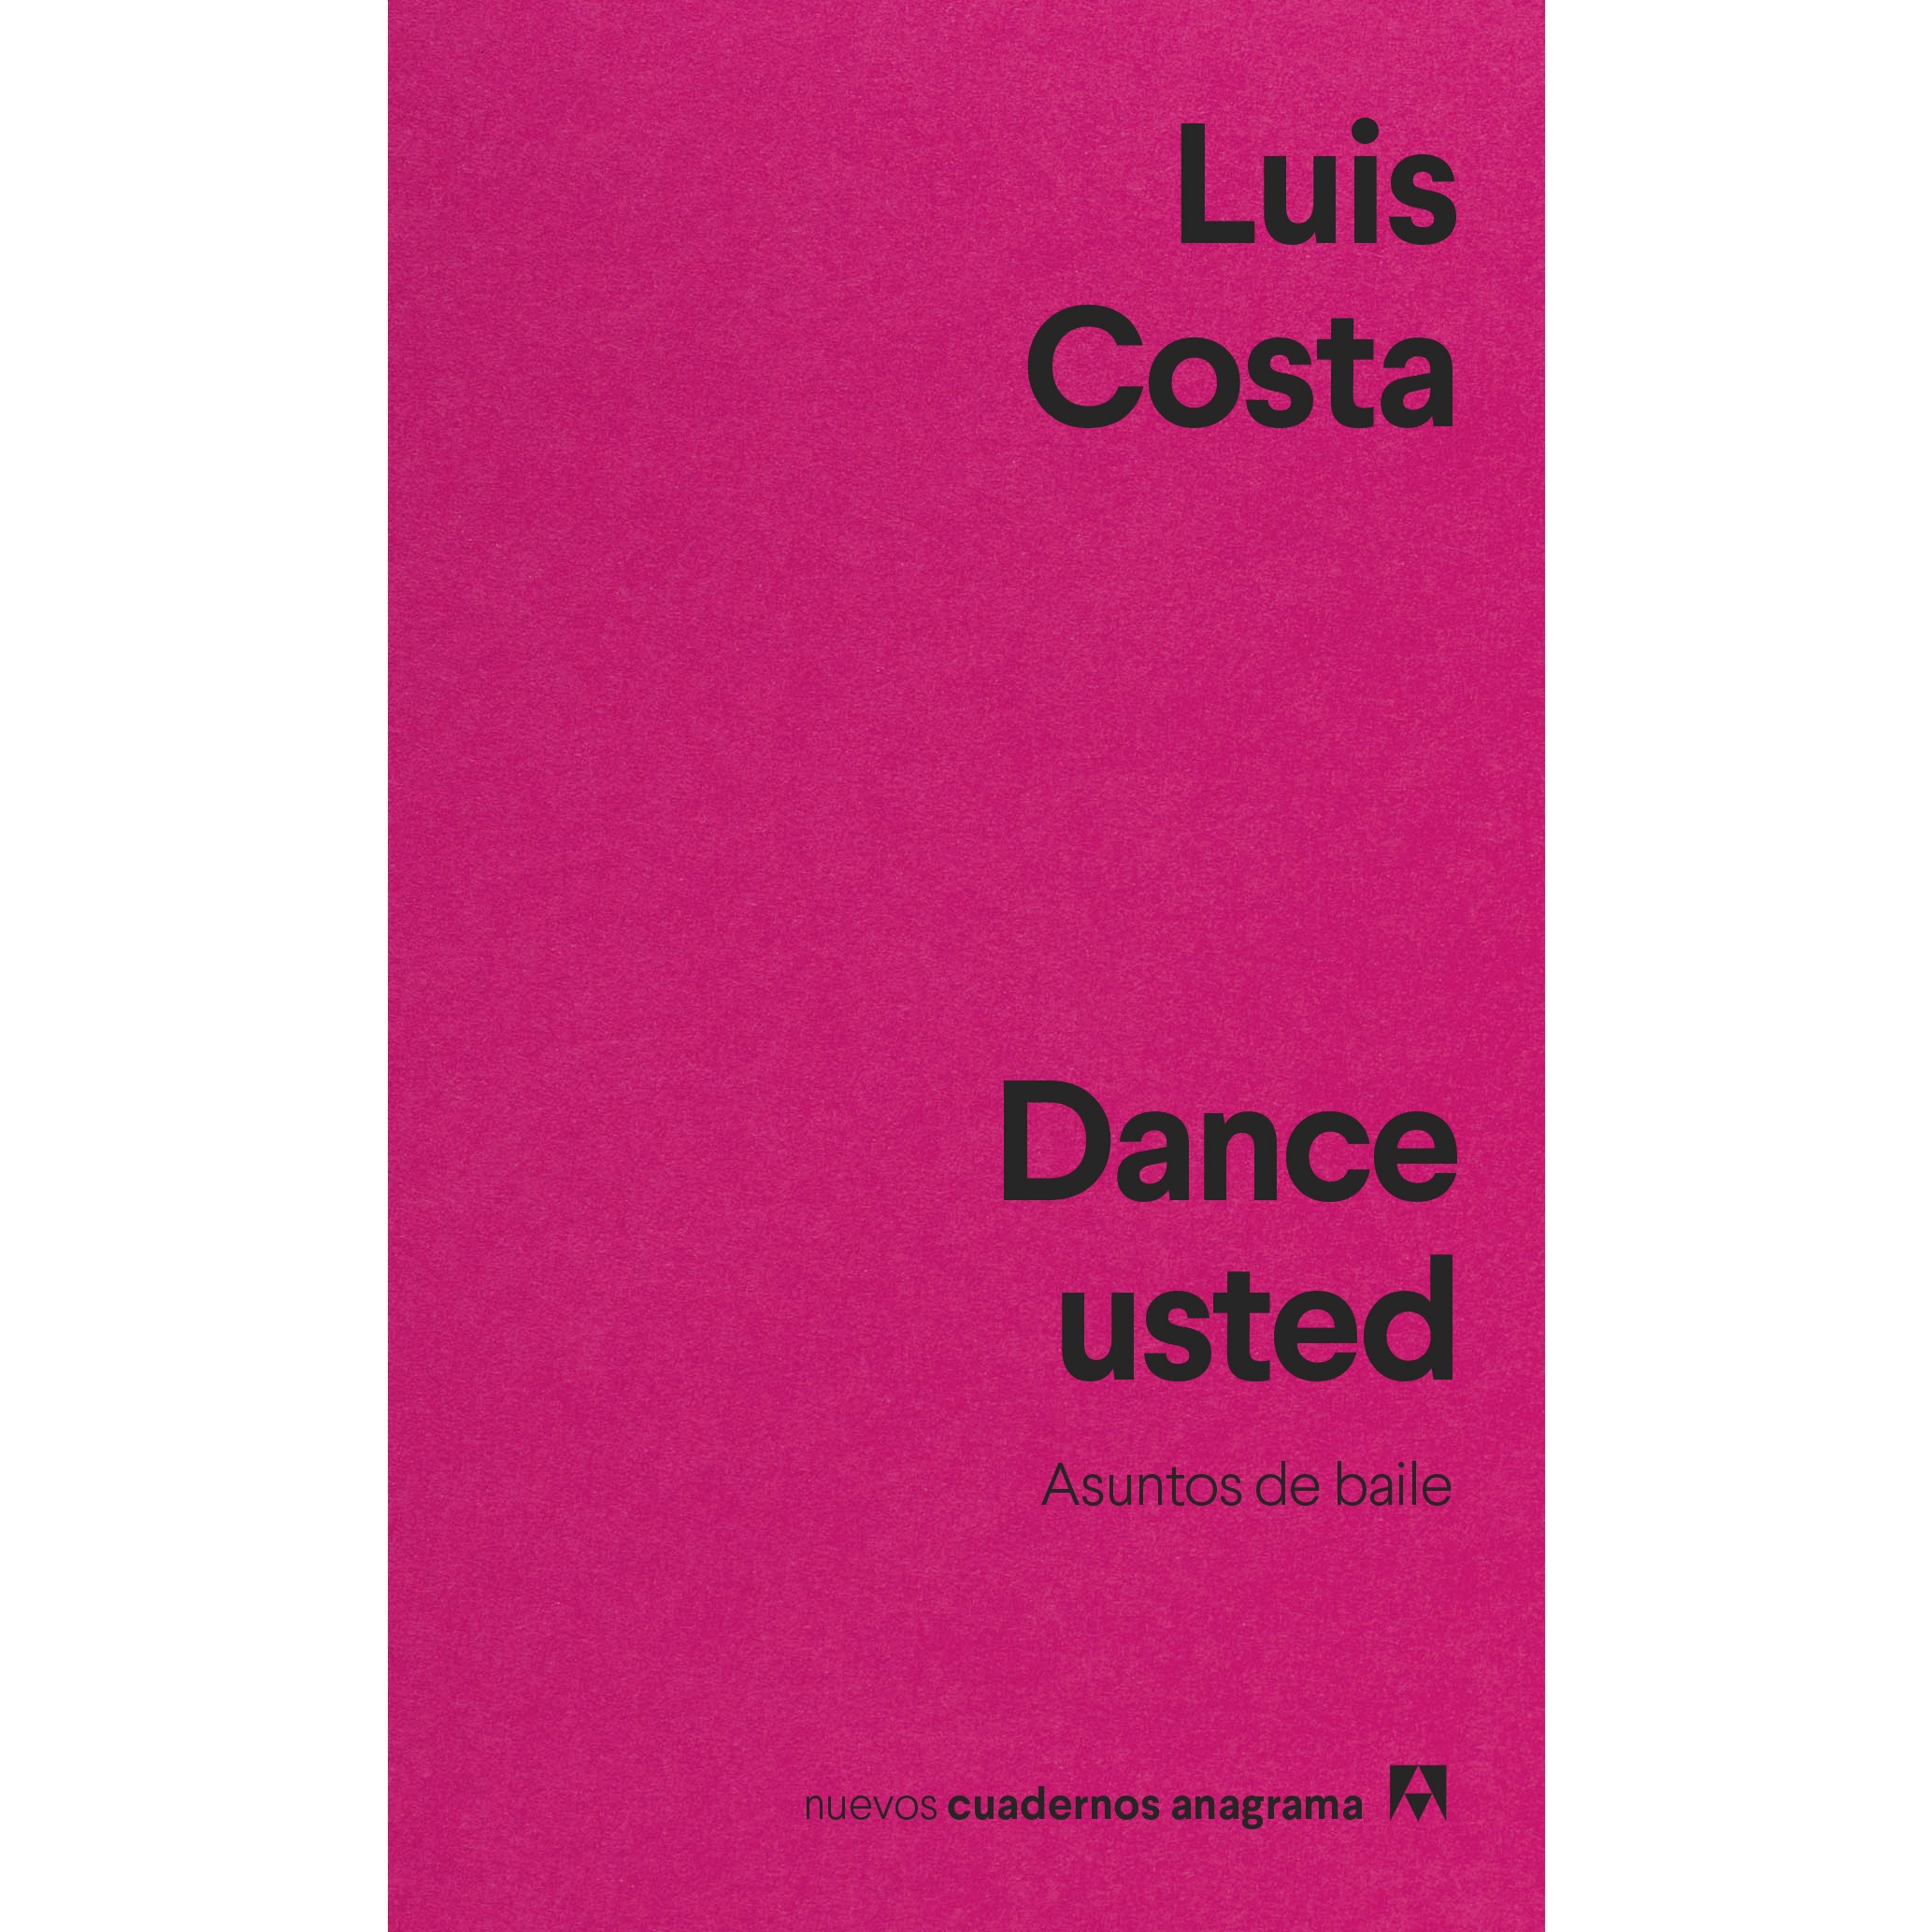 "Dance usted" de Luis Costa